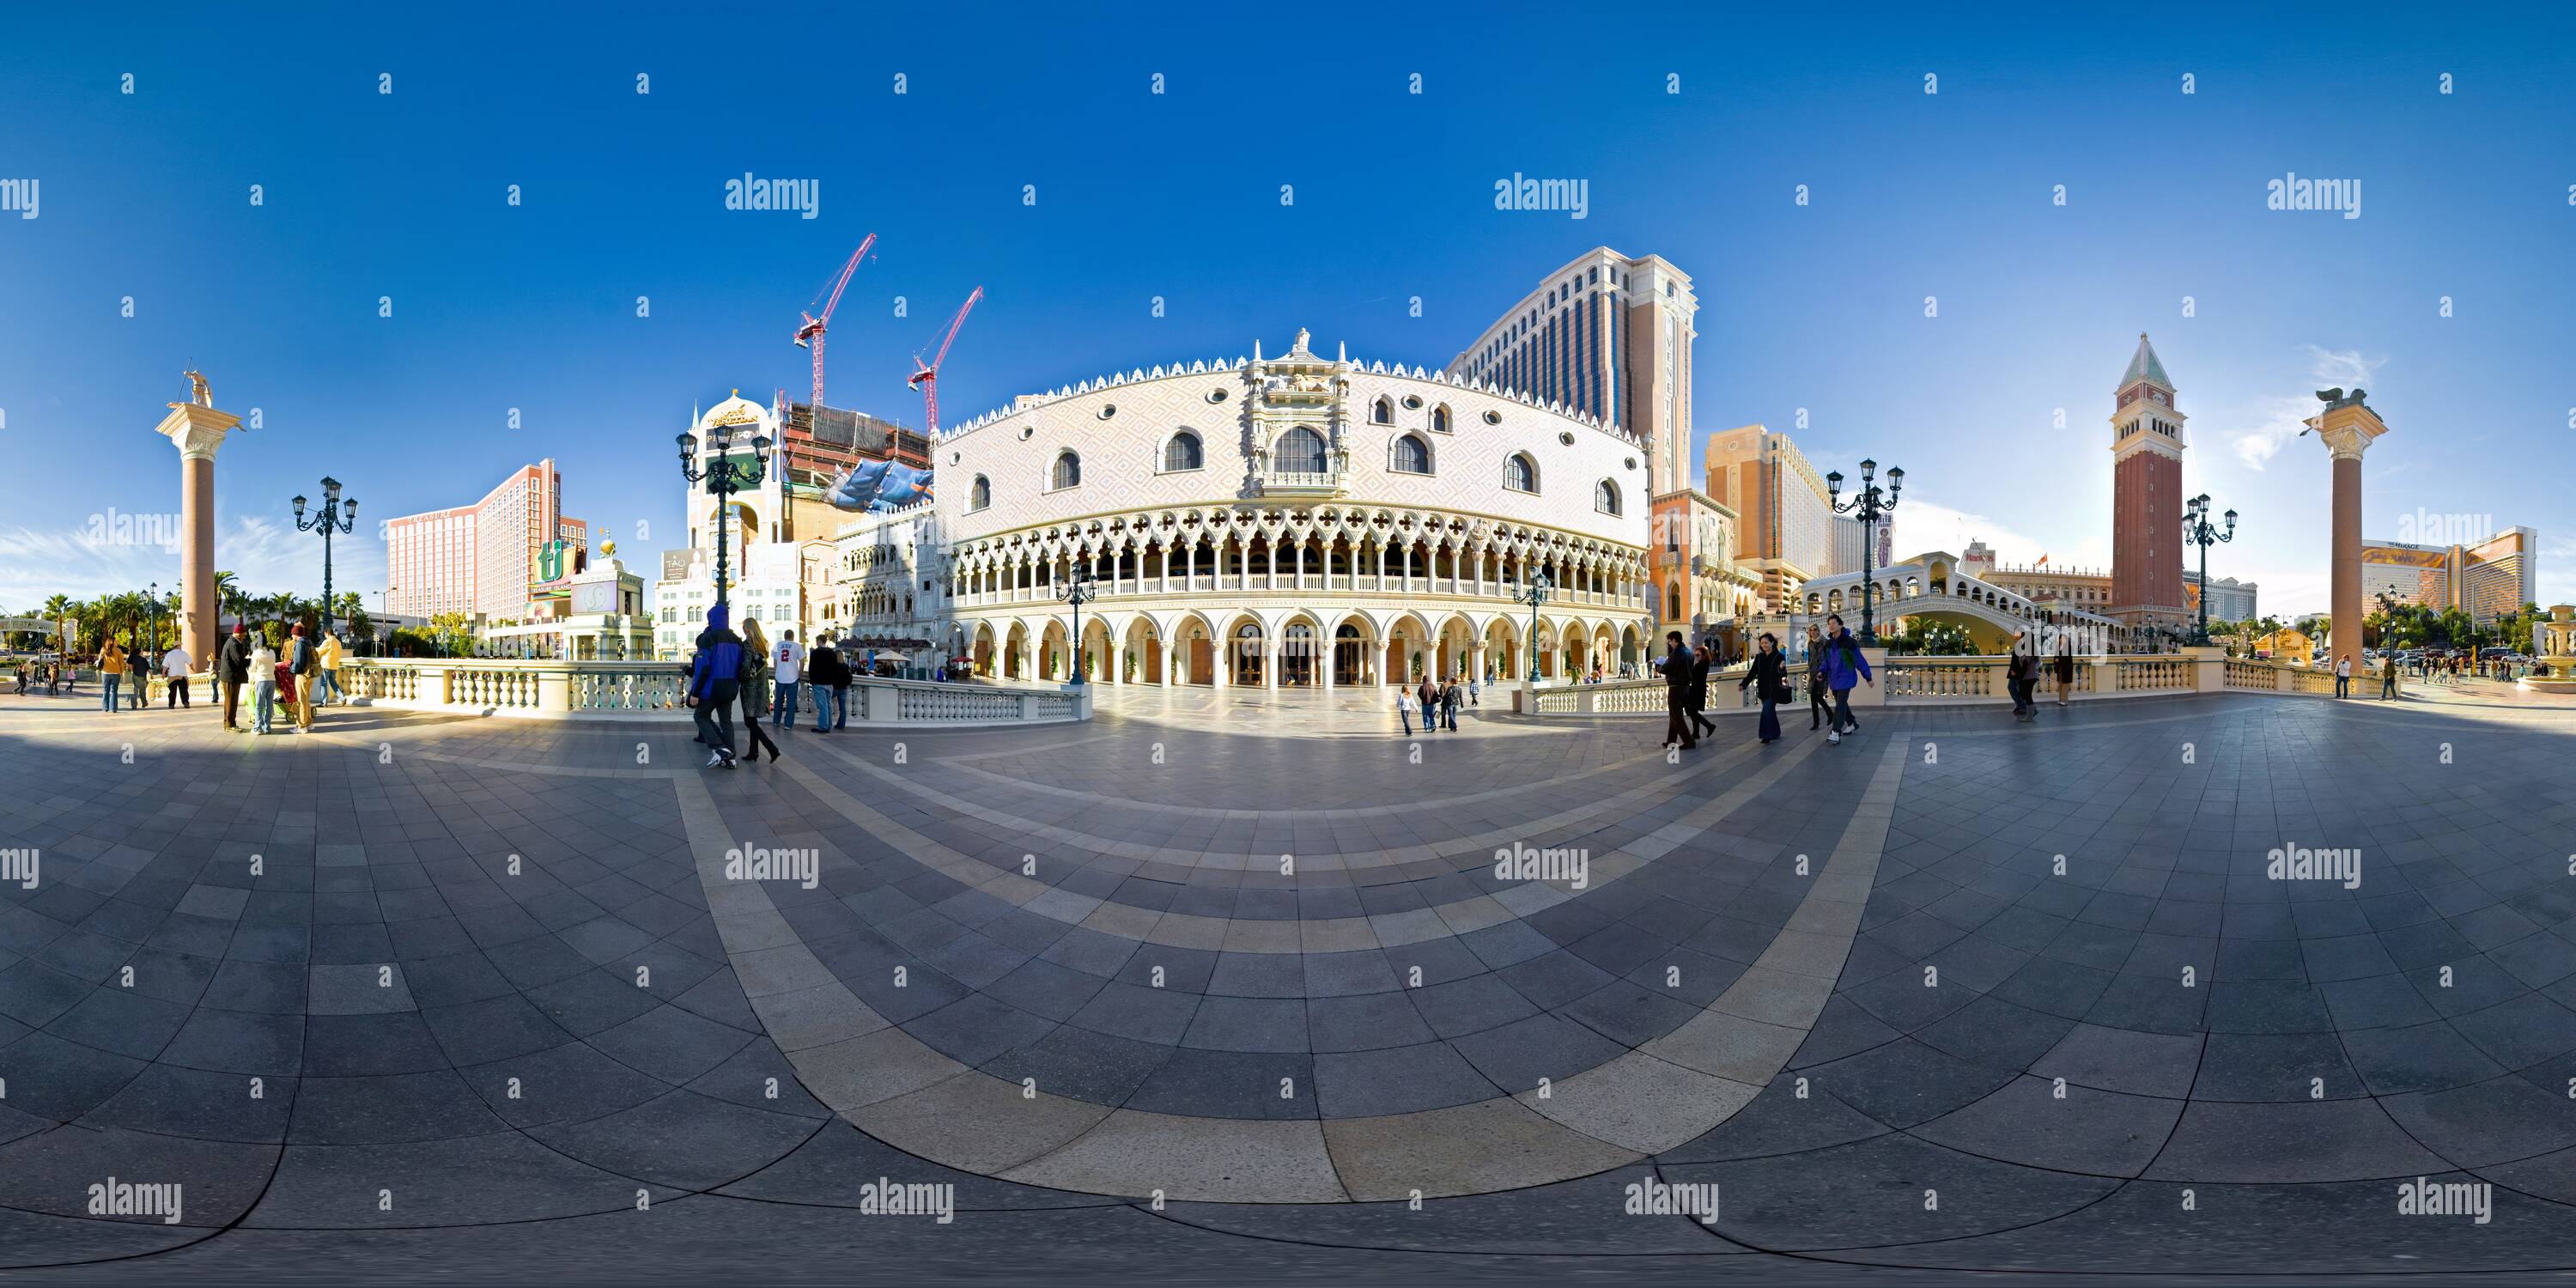 360 degree panoramic view of The Venetian Plaza